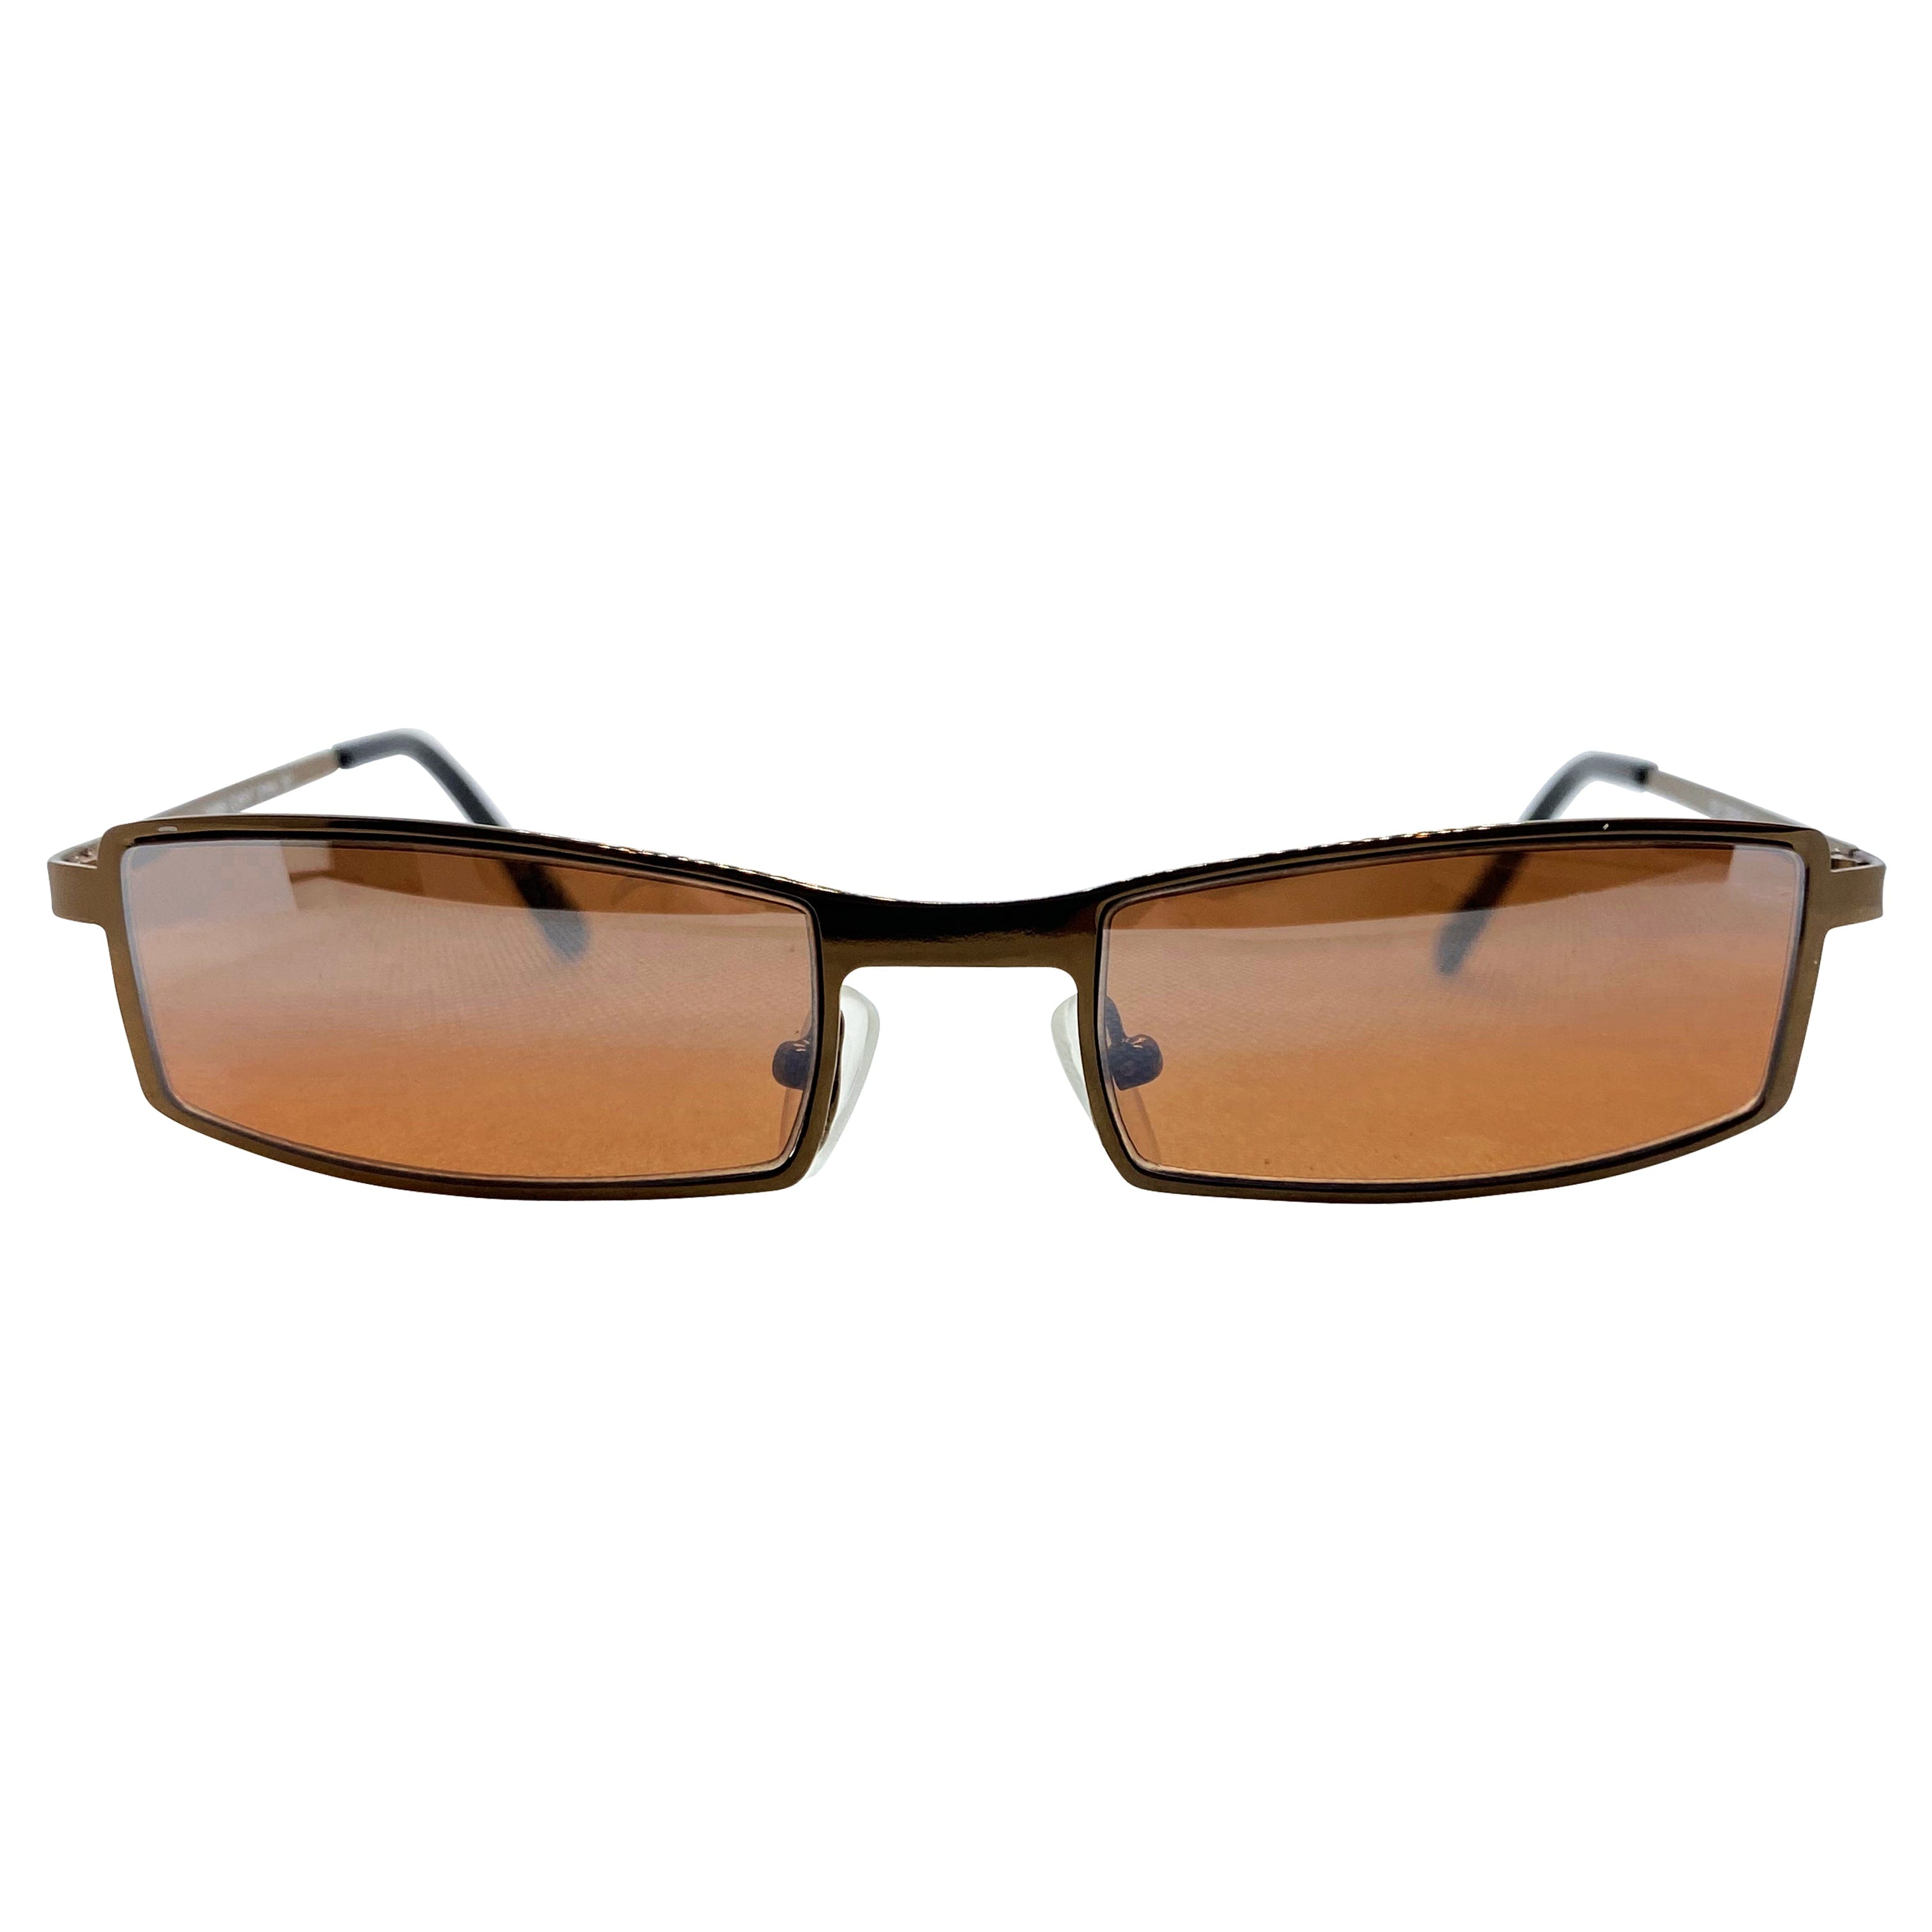 TITO Copper/Copper Sunglasses | Blue-Blocker | Day Driving